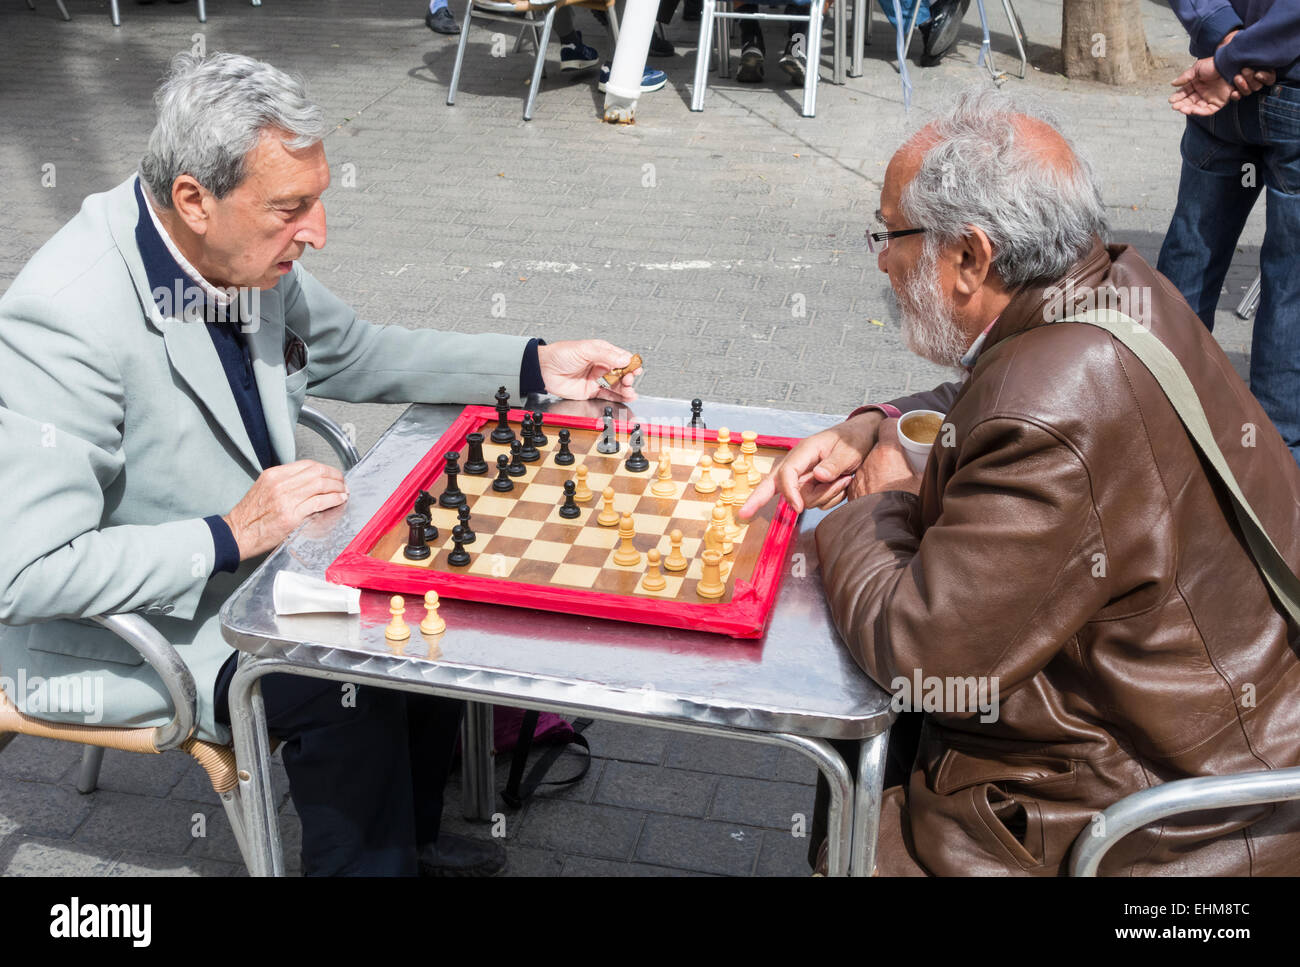 Männer spielen Schach im Parque Santa Catalina, Las Palmas, Gran Canaria, Kanarische Inseln, Spanien Stockfoto